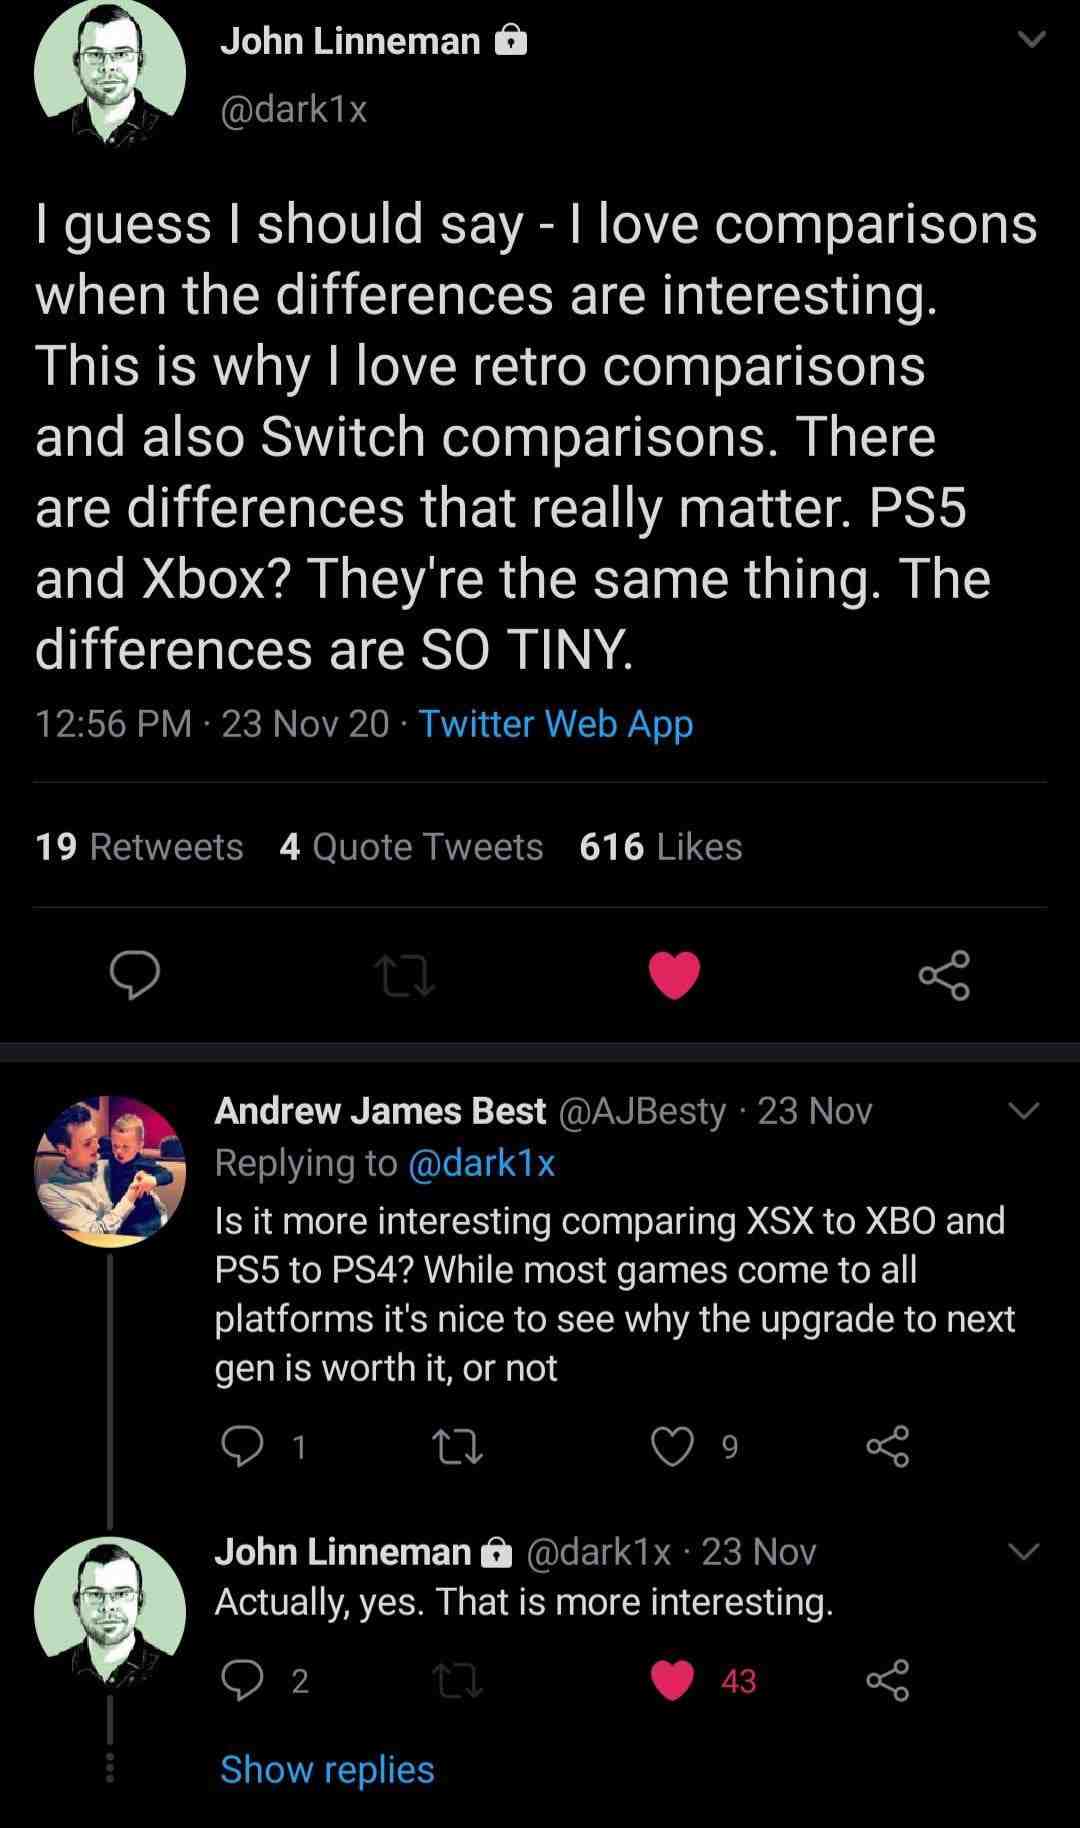 Digital Foundry rend son verdict sur la comparaison entre la PS5 et la Xbox série X de 'Cyberpunk 2077'.